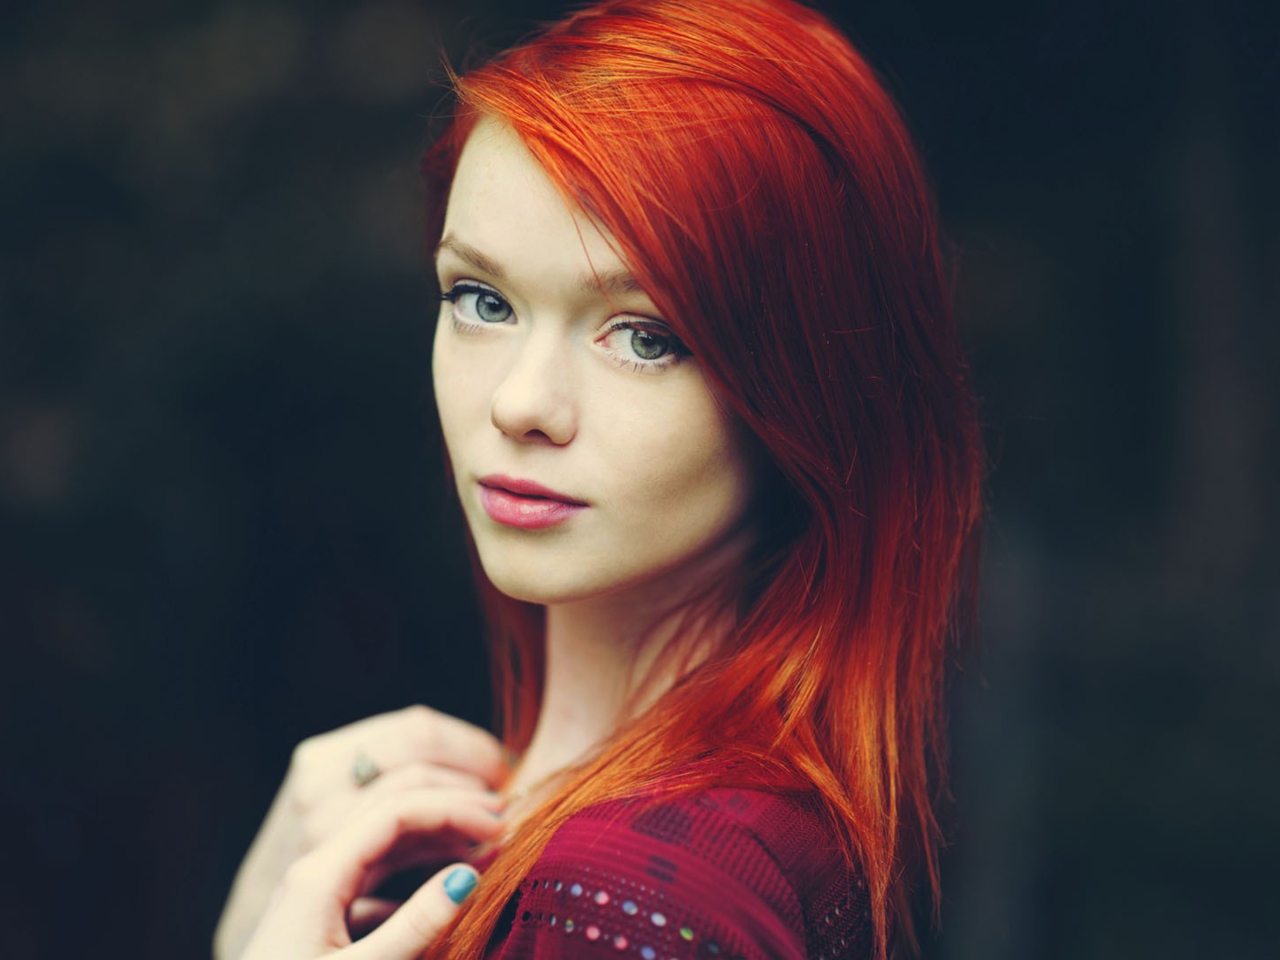 Обои Redhead Girl 1280x960